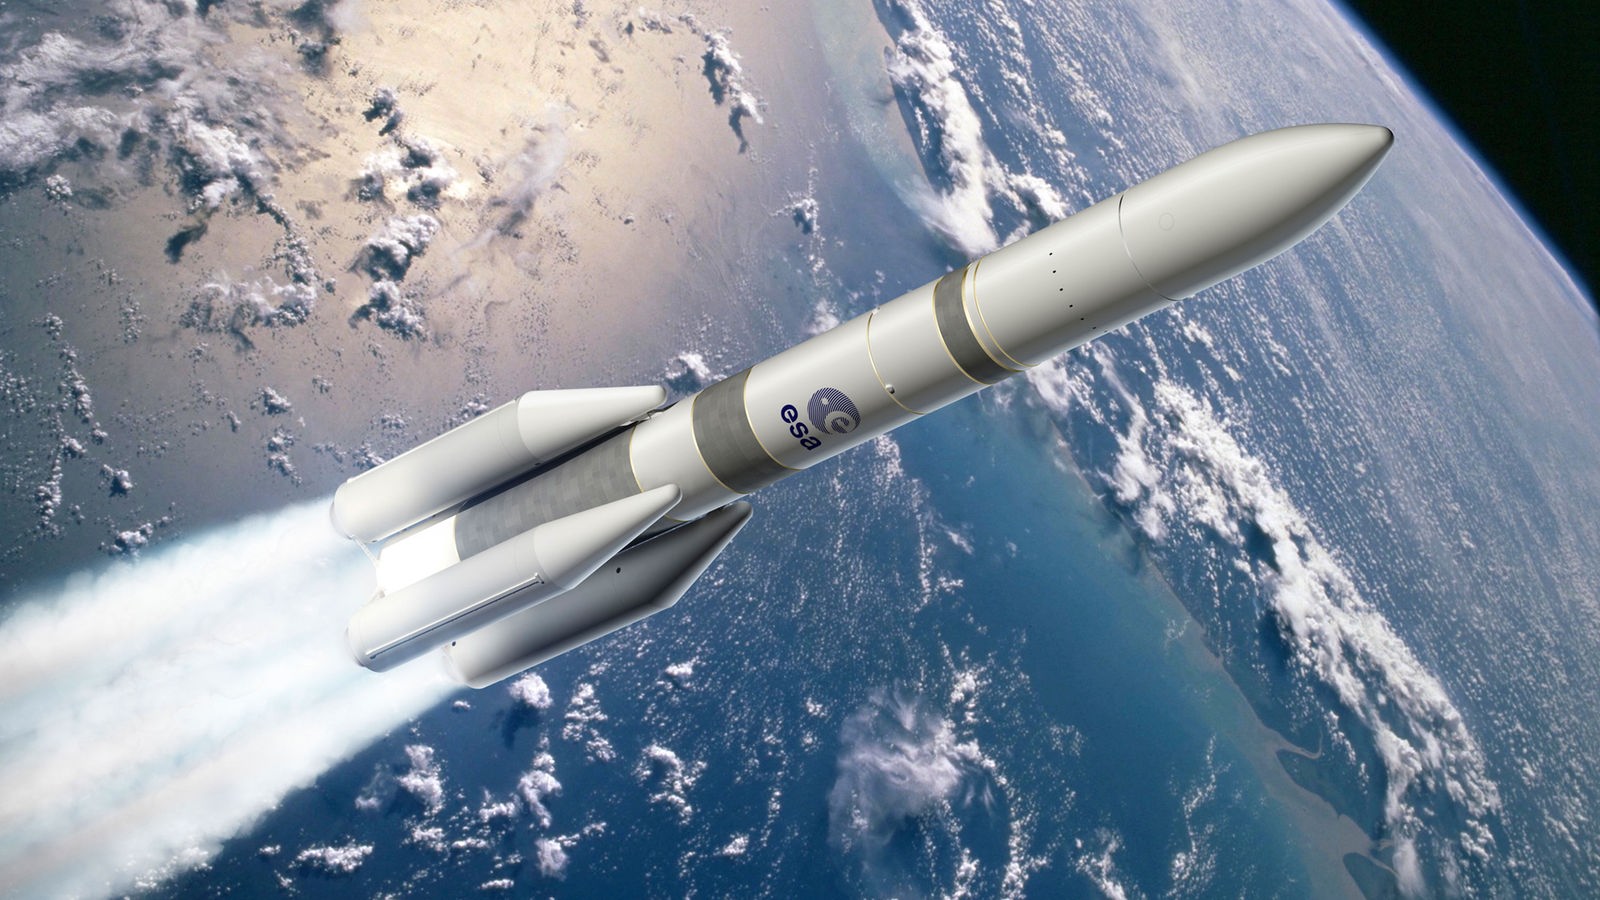 Woydt Das Ariane Programm Geschichte/ESA/Raumfahrt/Raketen/Technik/Handbuch 